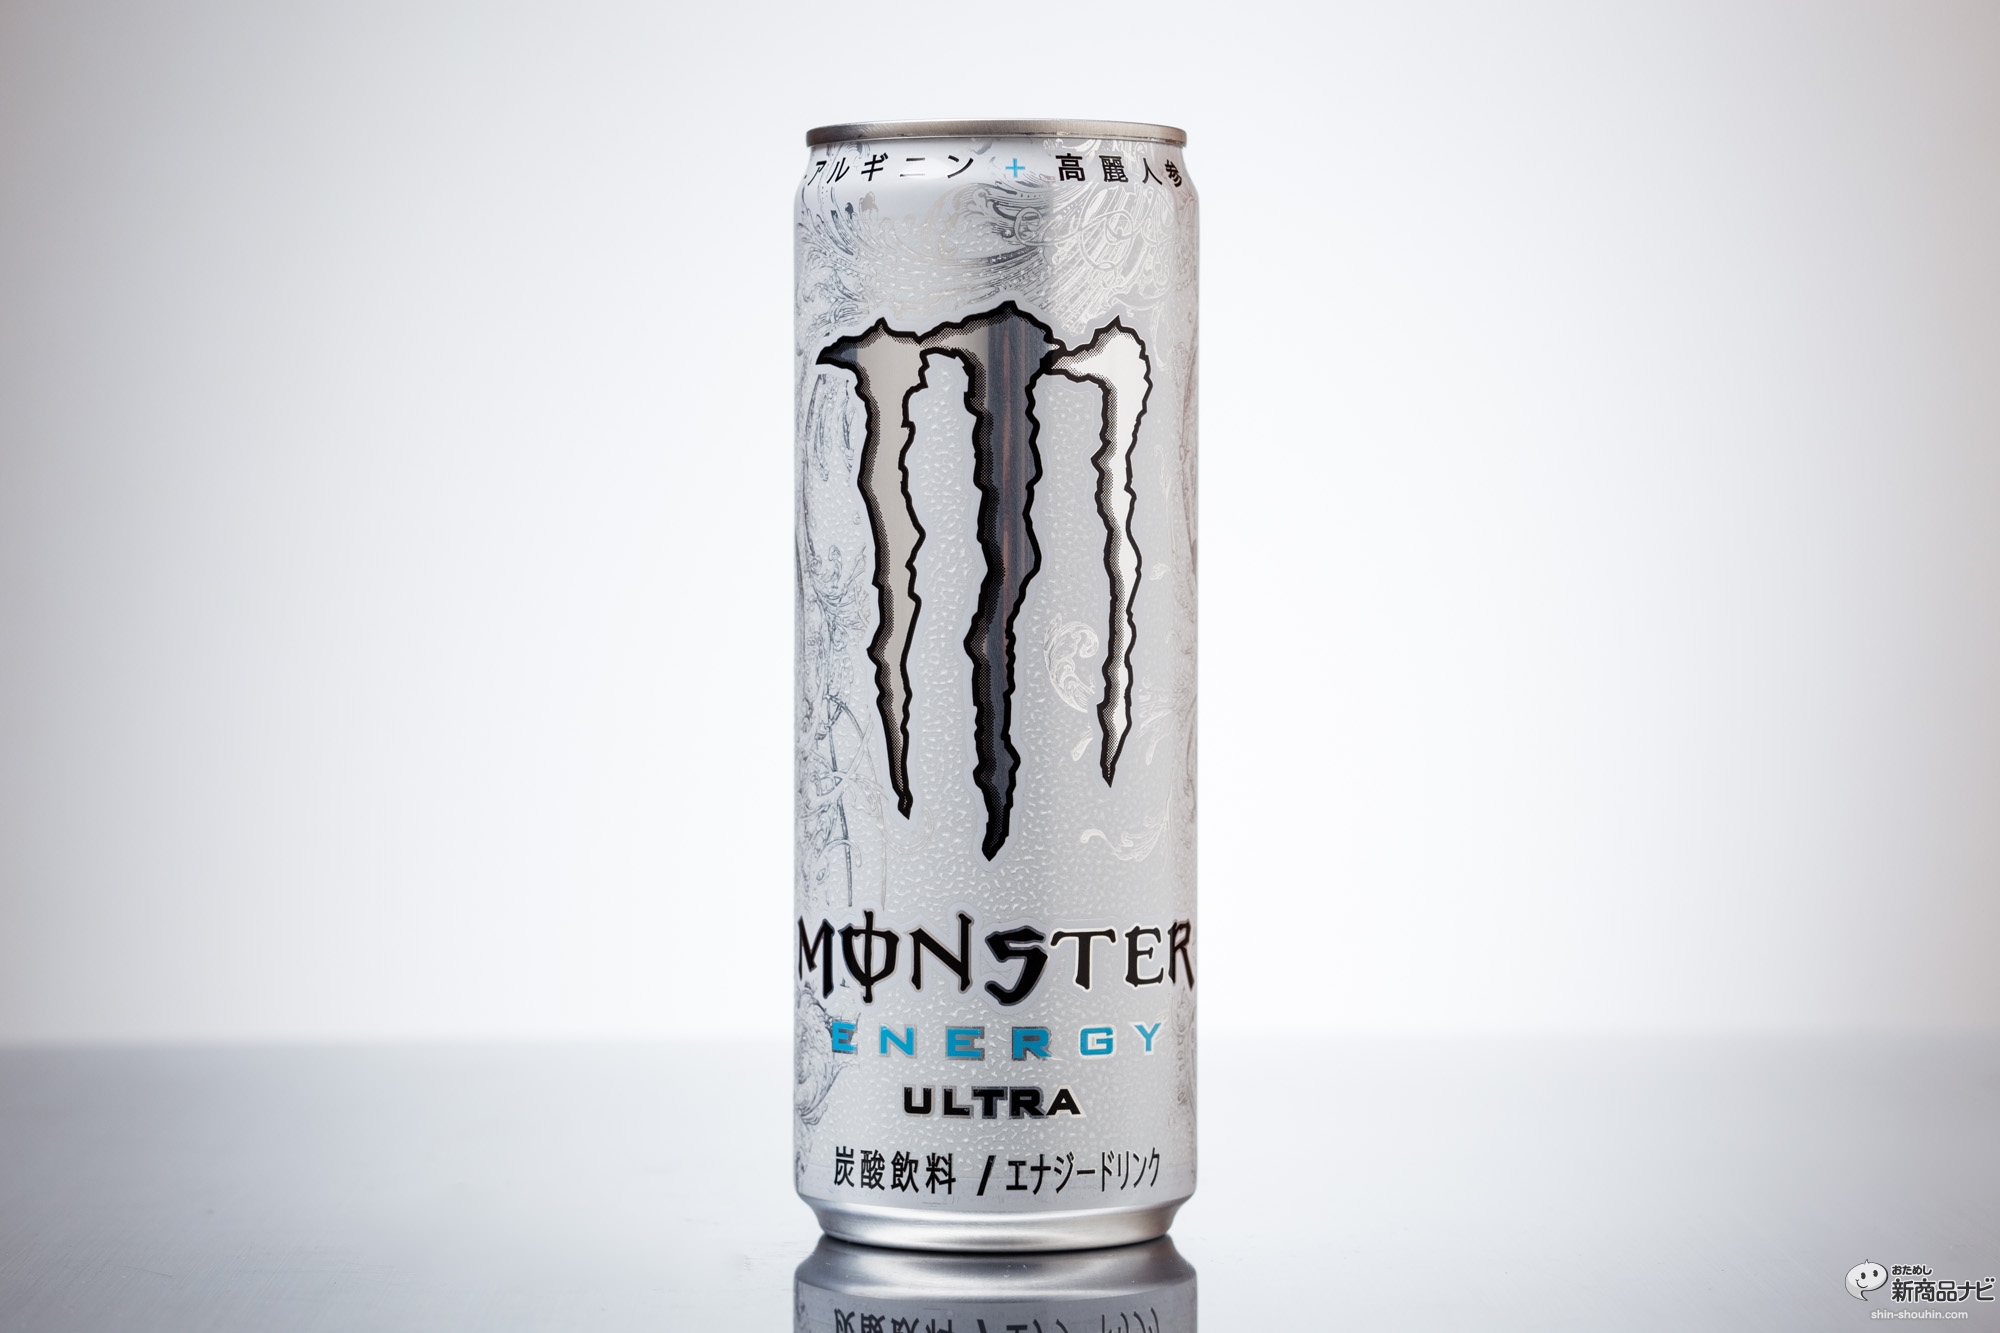 おためし新商品ナビ Blog Archive Monster Ultra モンスター ウルトラ 高カフェインに高麗人参 アルギニンの強烈刺激で夏バテ防止